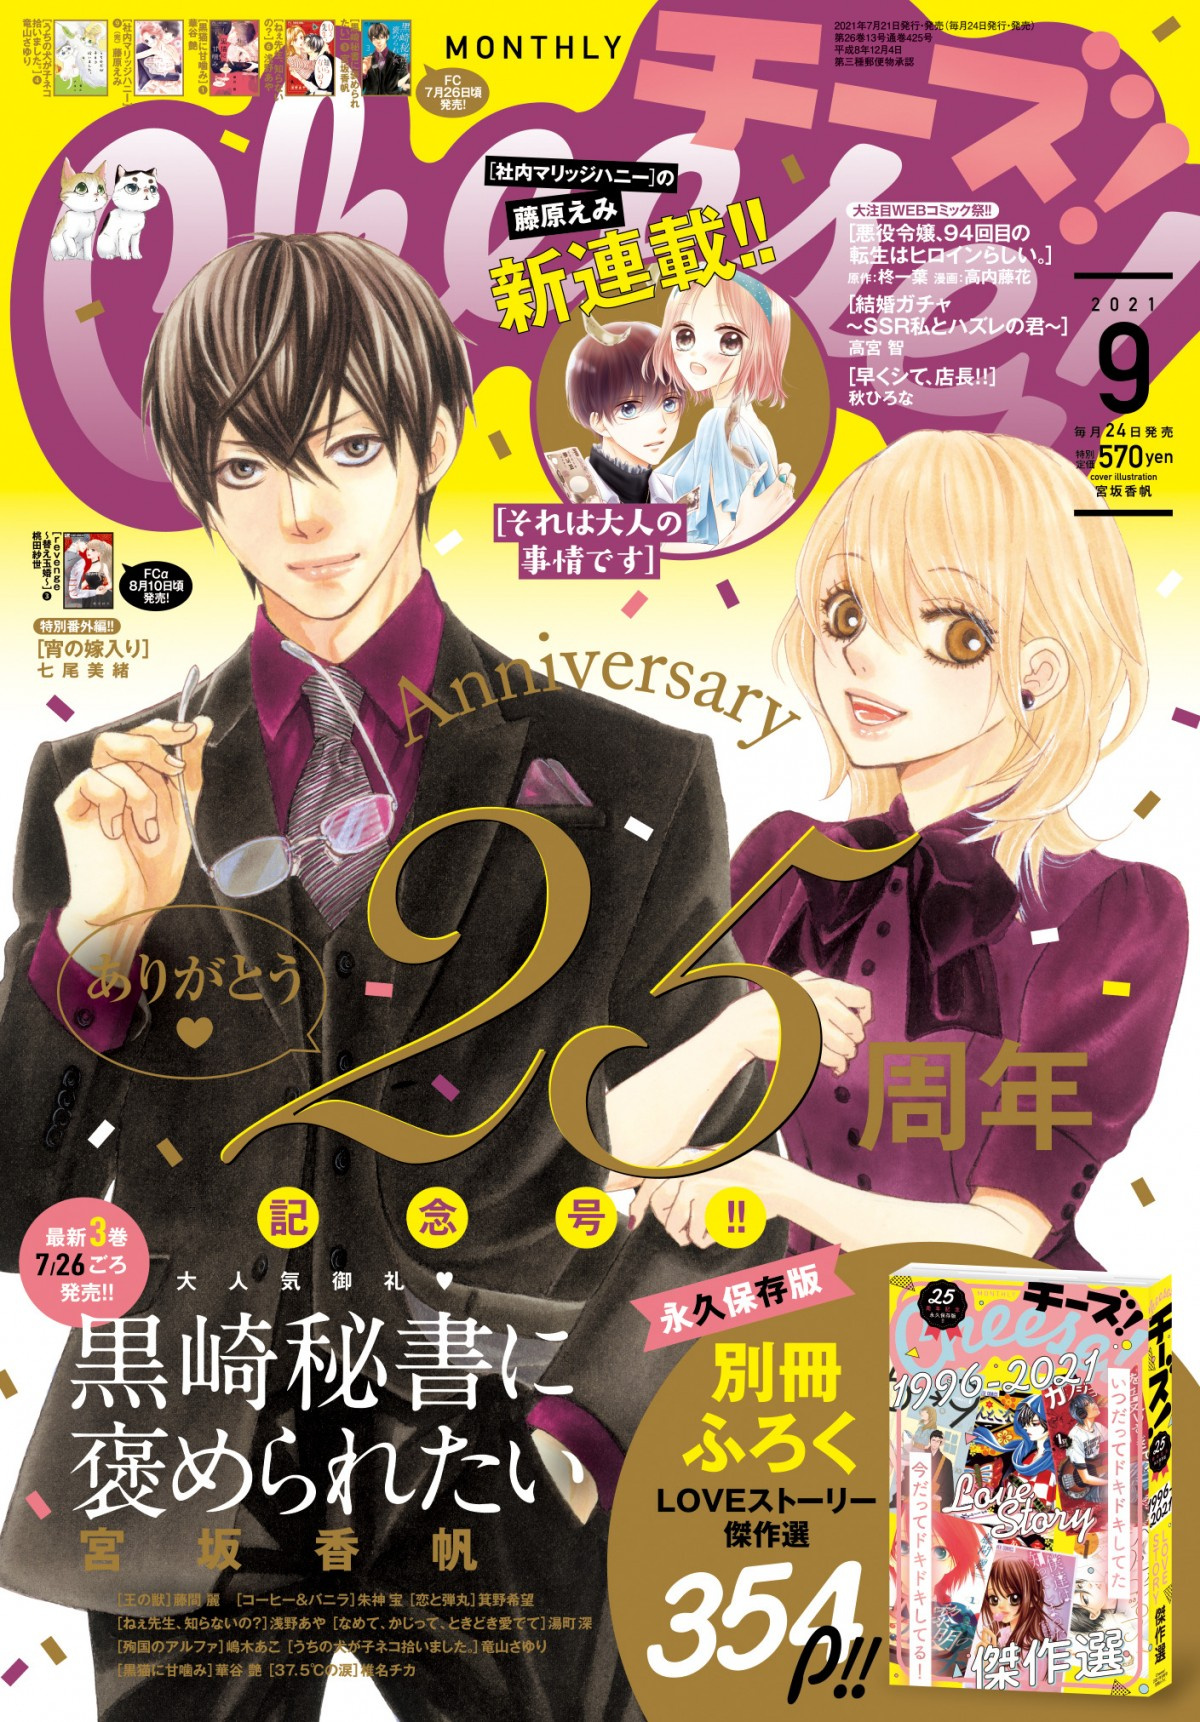 少女漫画誌 Cheese 創刊25周年 各電子書店で100作品無料フェア実施 Oricon News